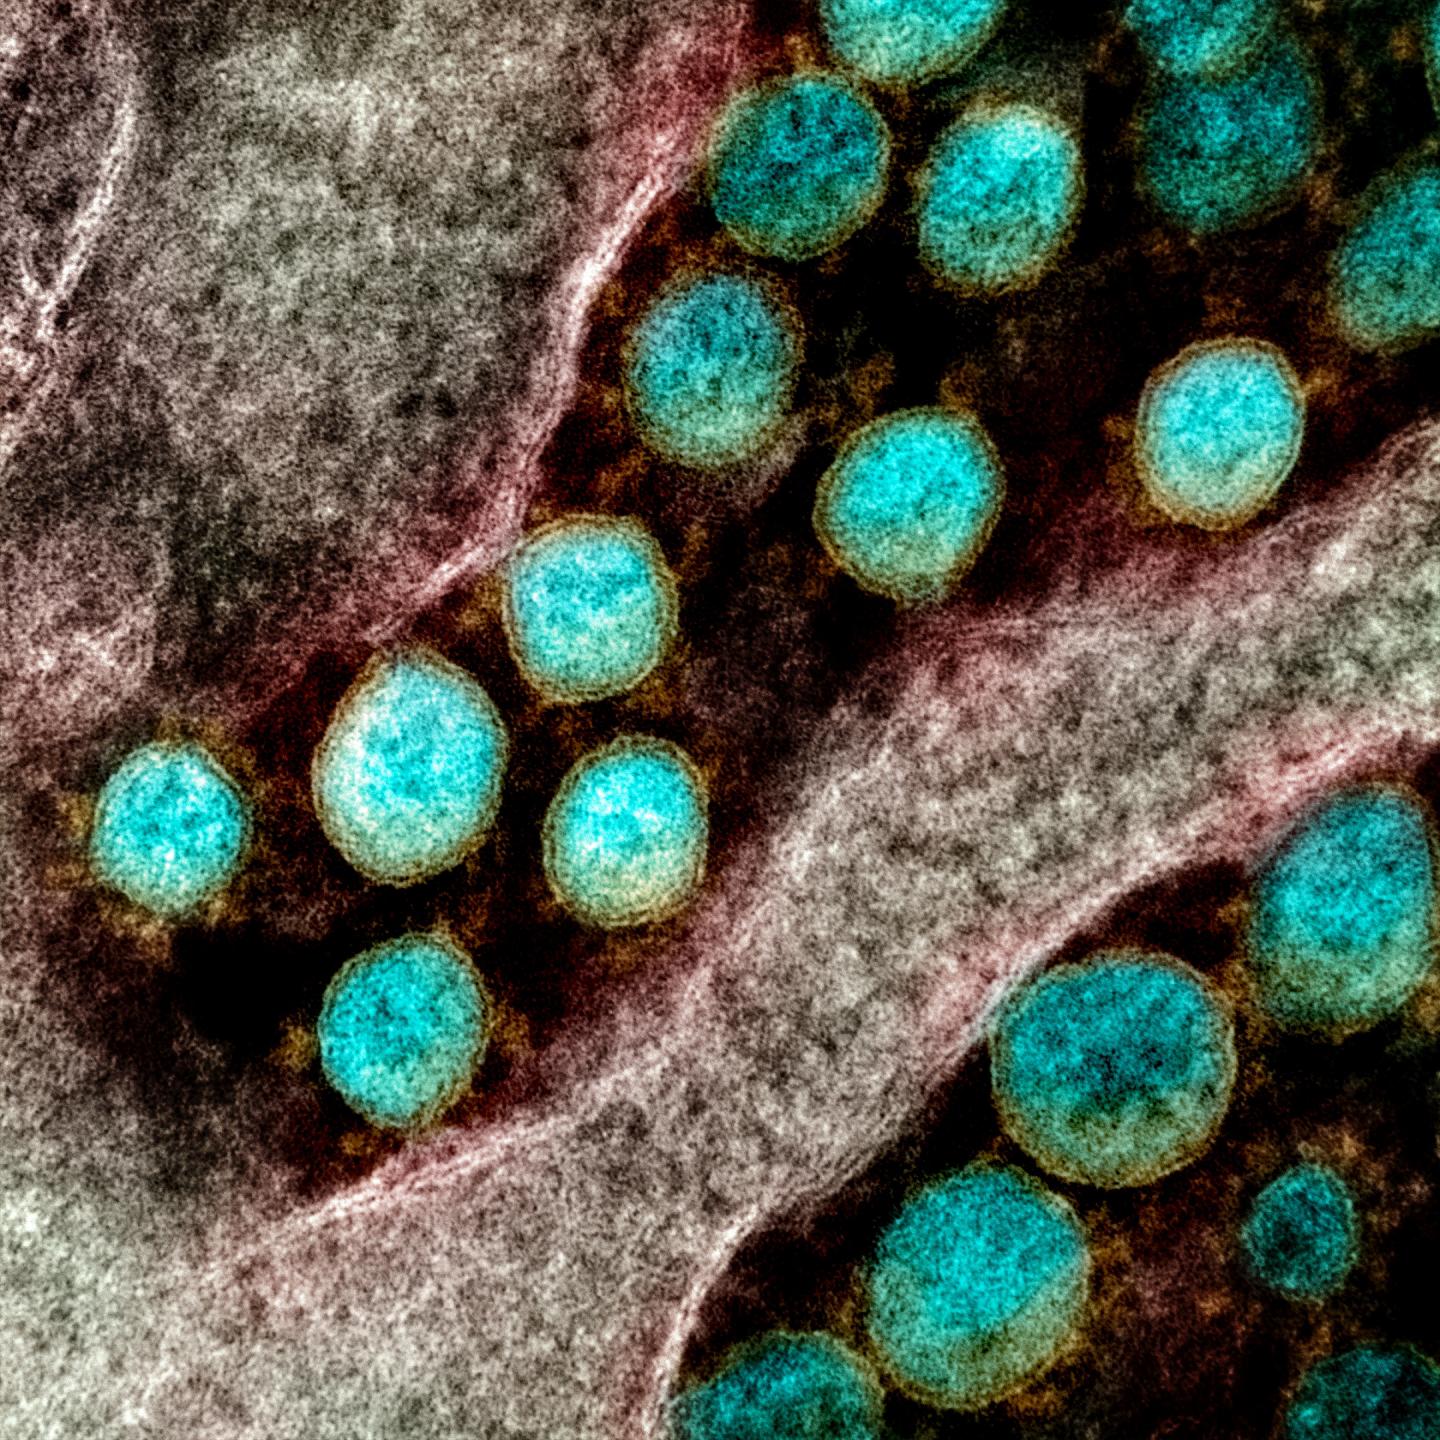 SARS-CoV-2 Virus Particles